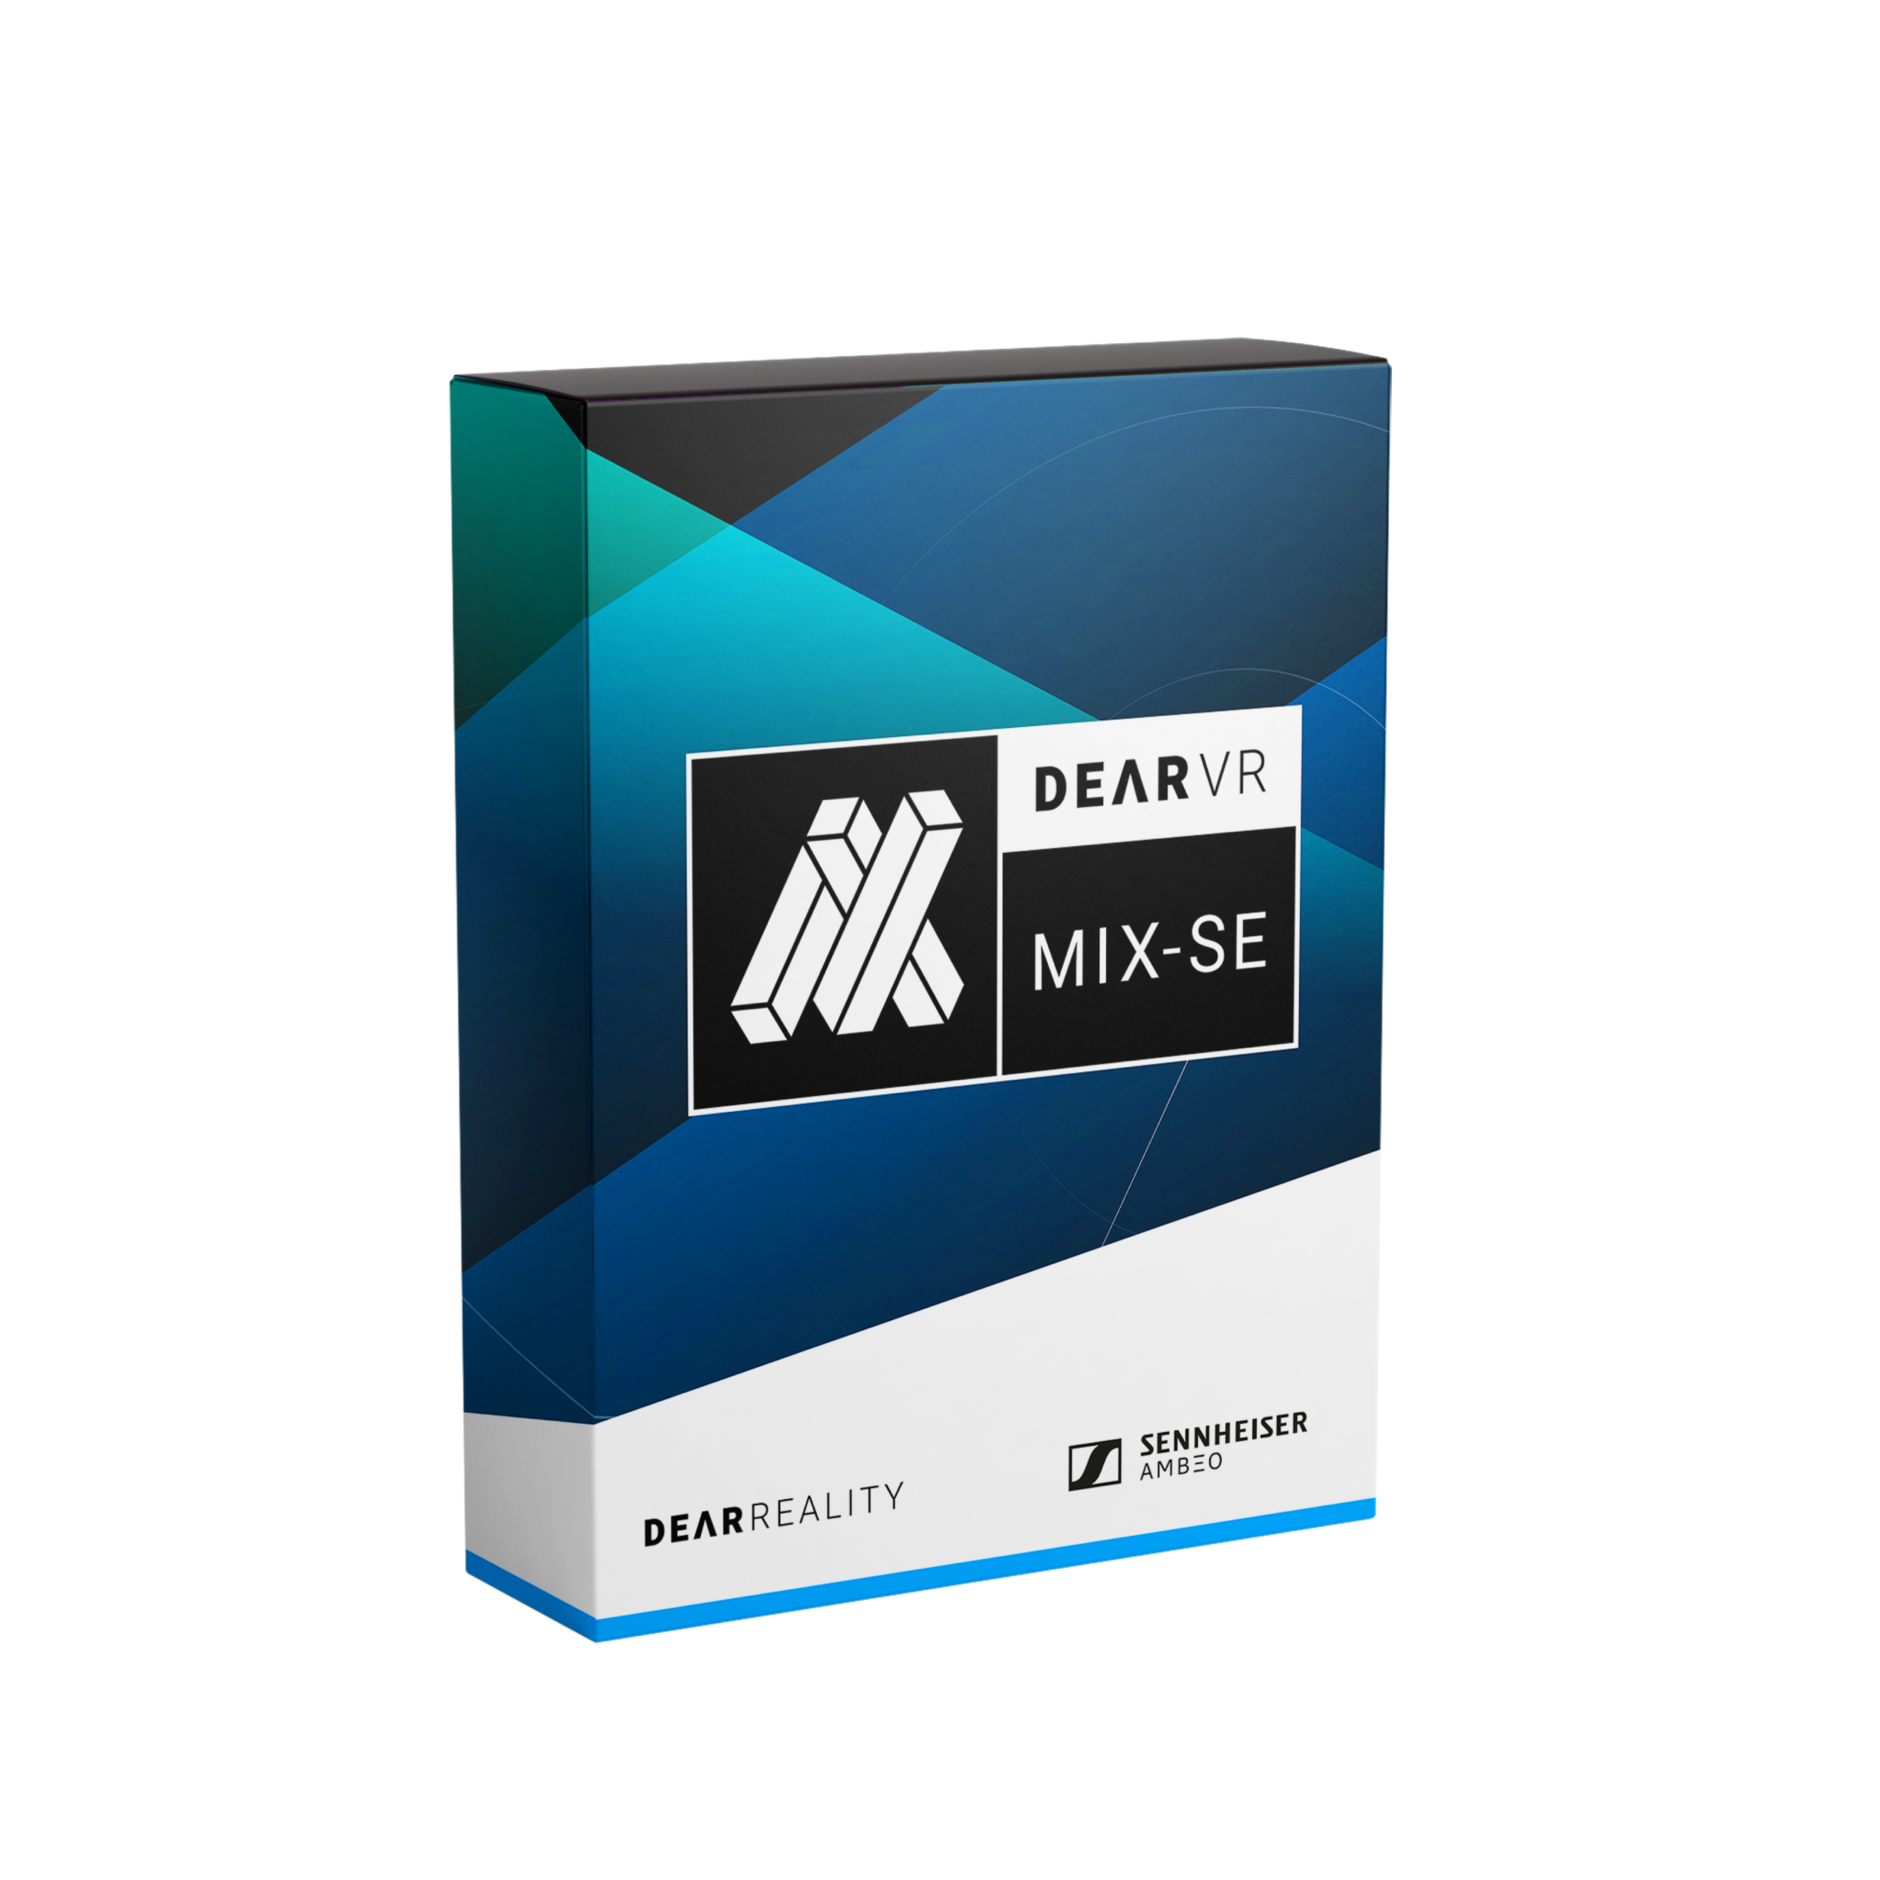 Includes dearVR MIX-SE Virtual Mixing Plugin